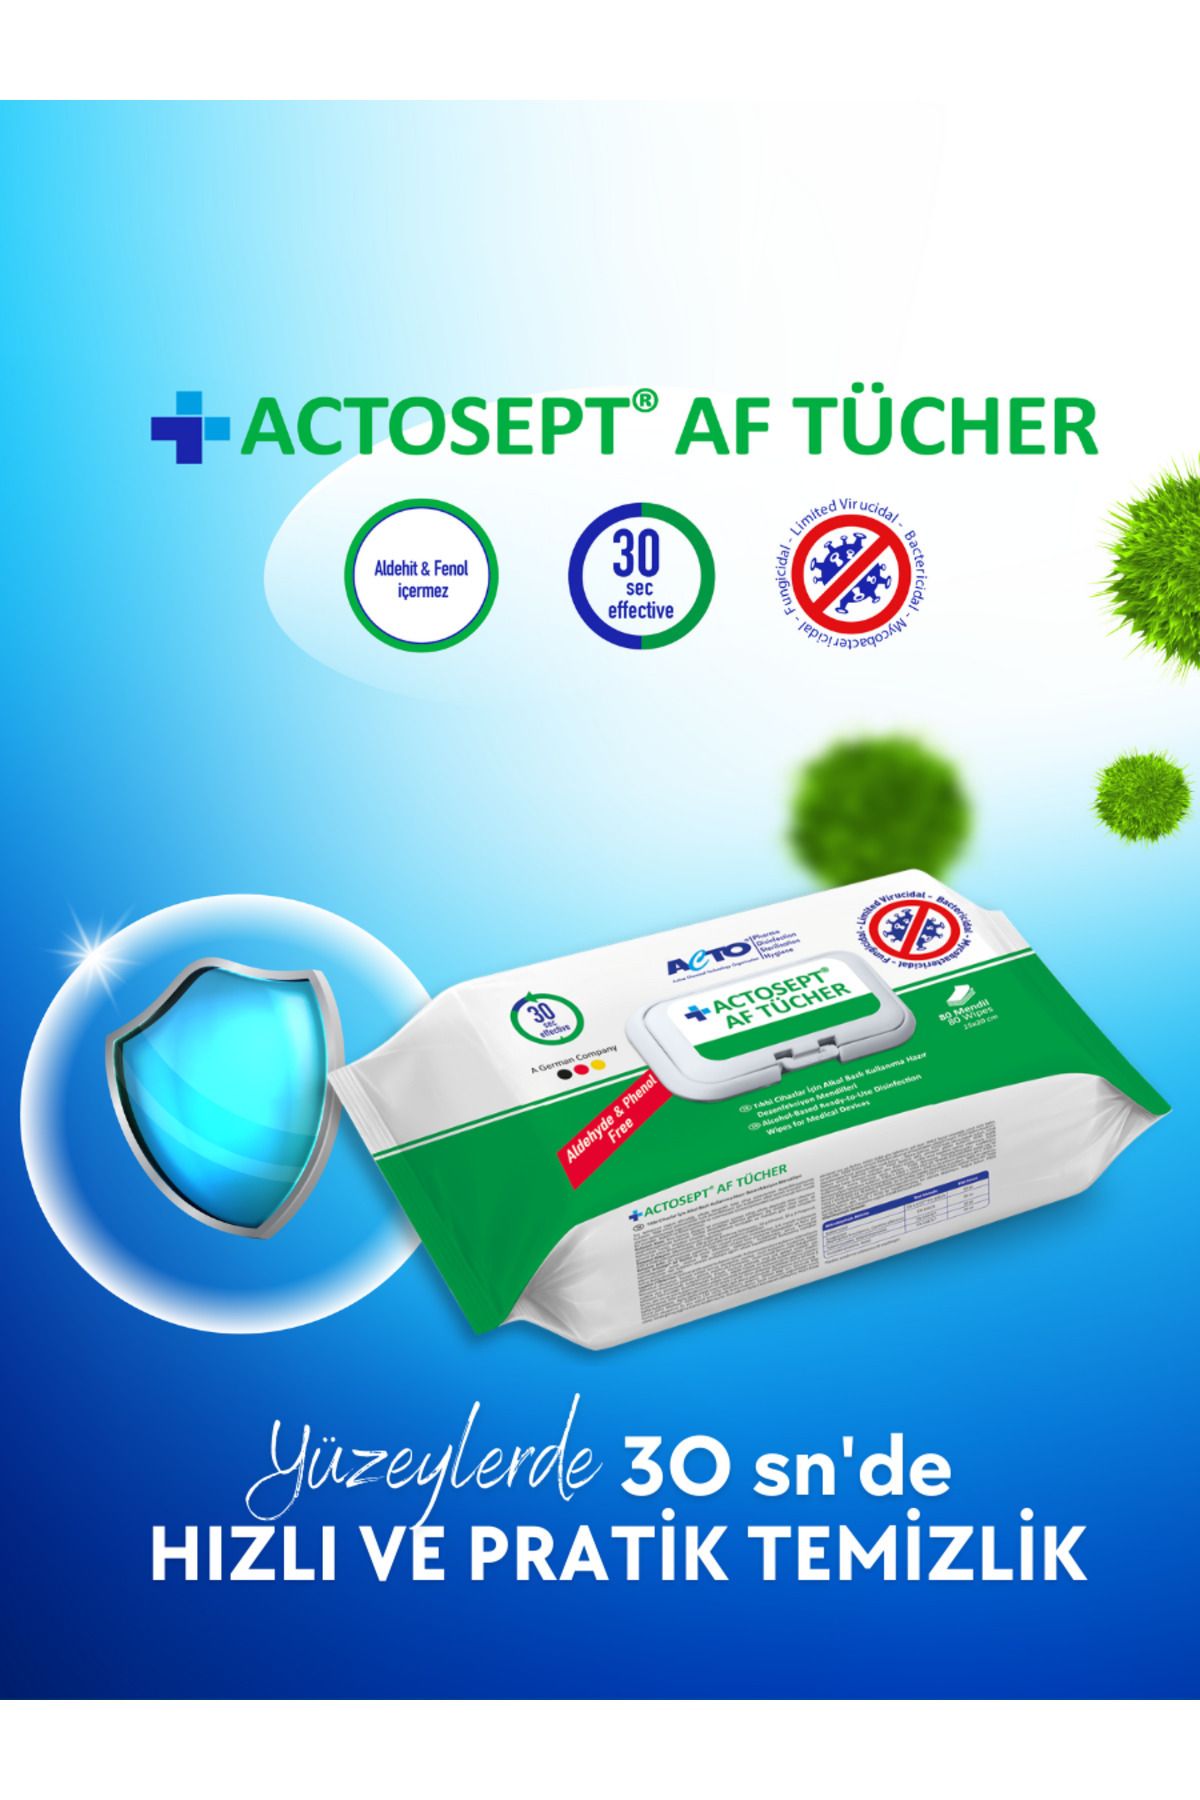 Actosept AF Actosept® Af 1 Litre + Actosept® Af Tücher 80 Mendil | Alkollü Yüzey Dezenfektanı Ve Mendil